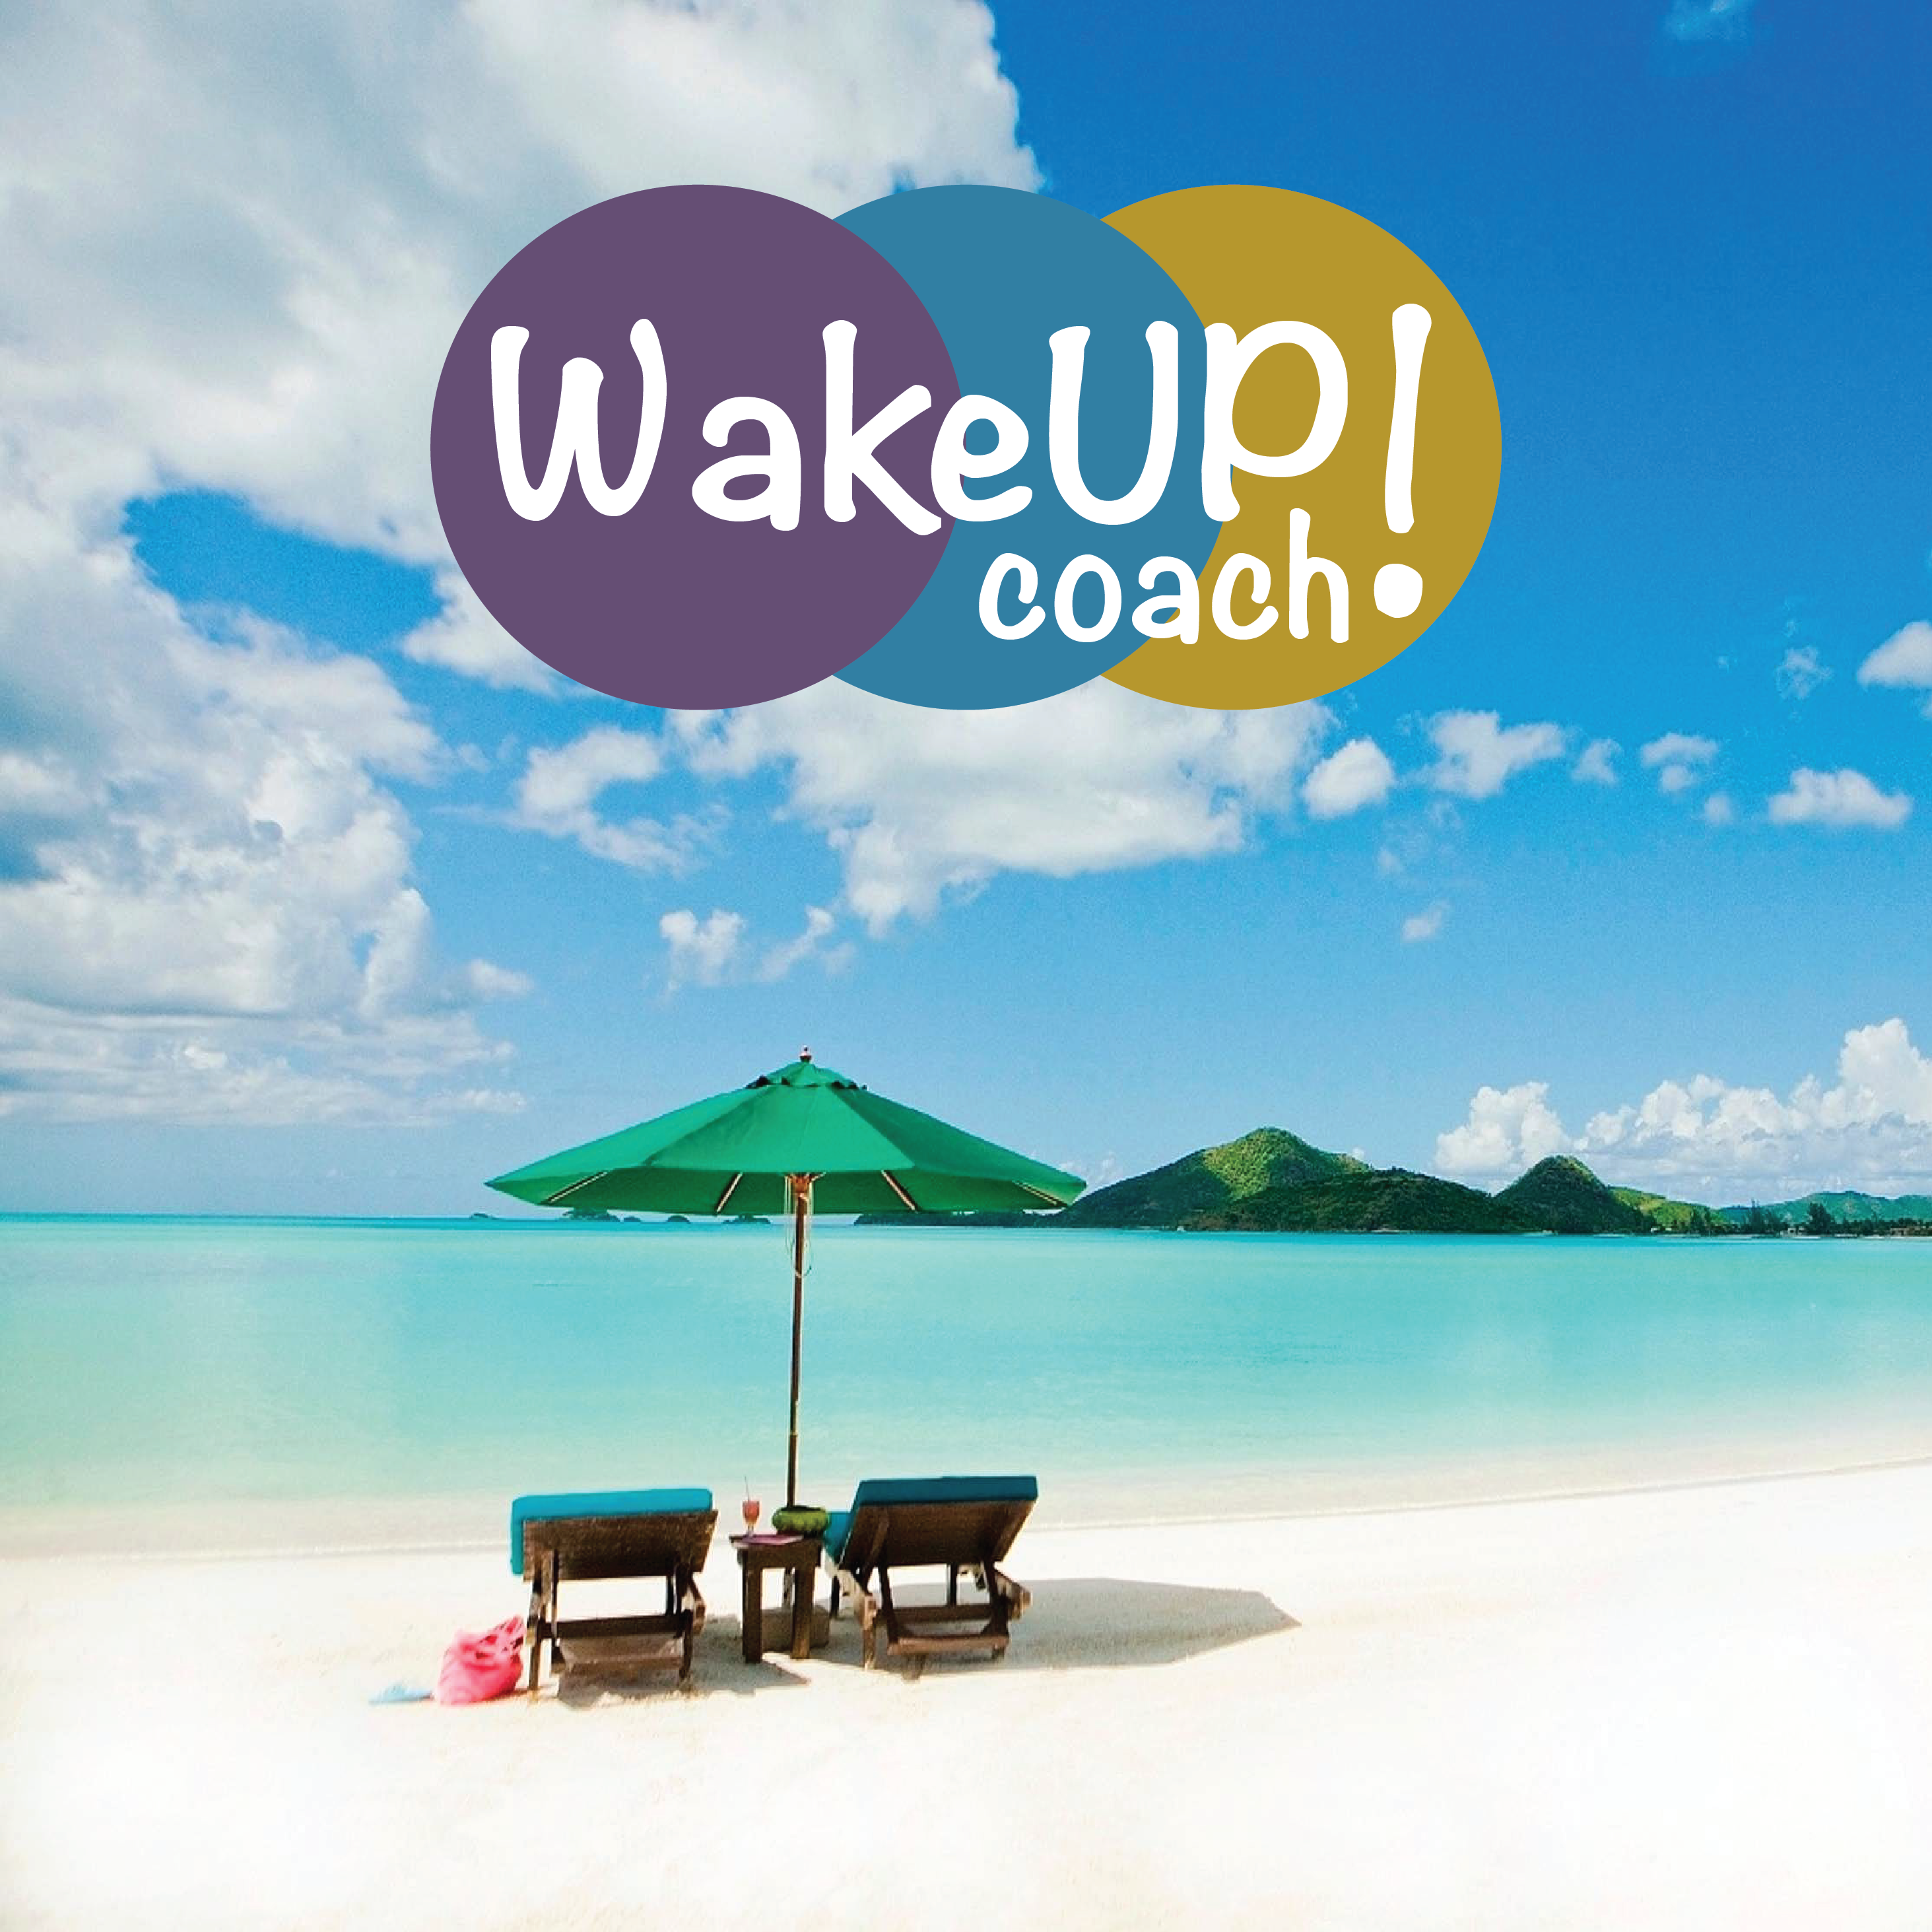 WakeUp! Coach